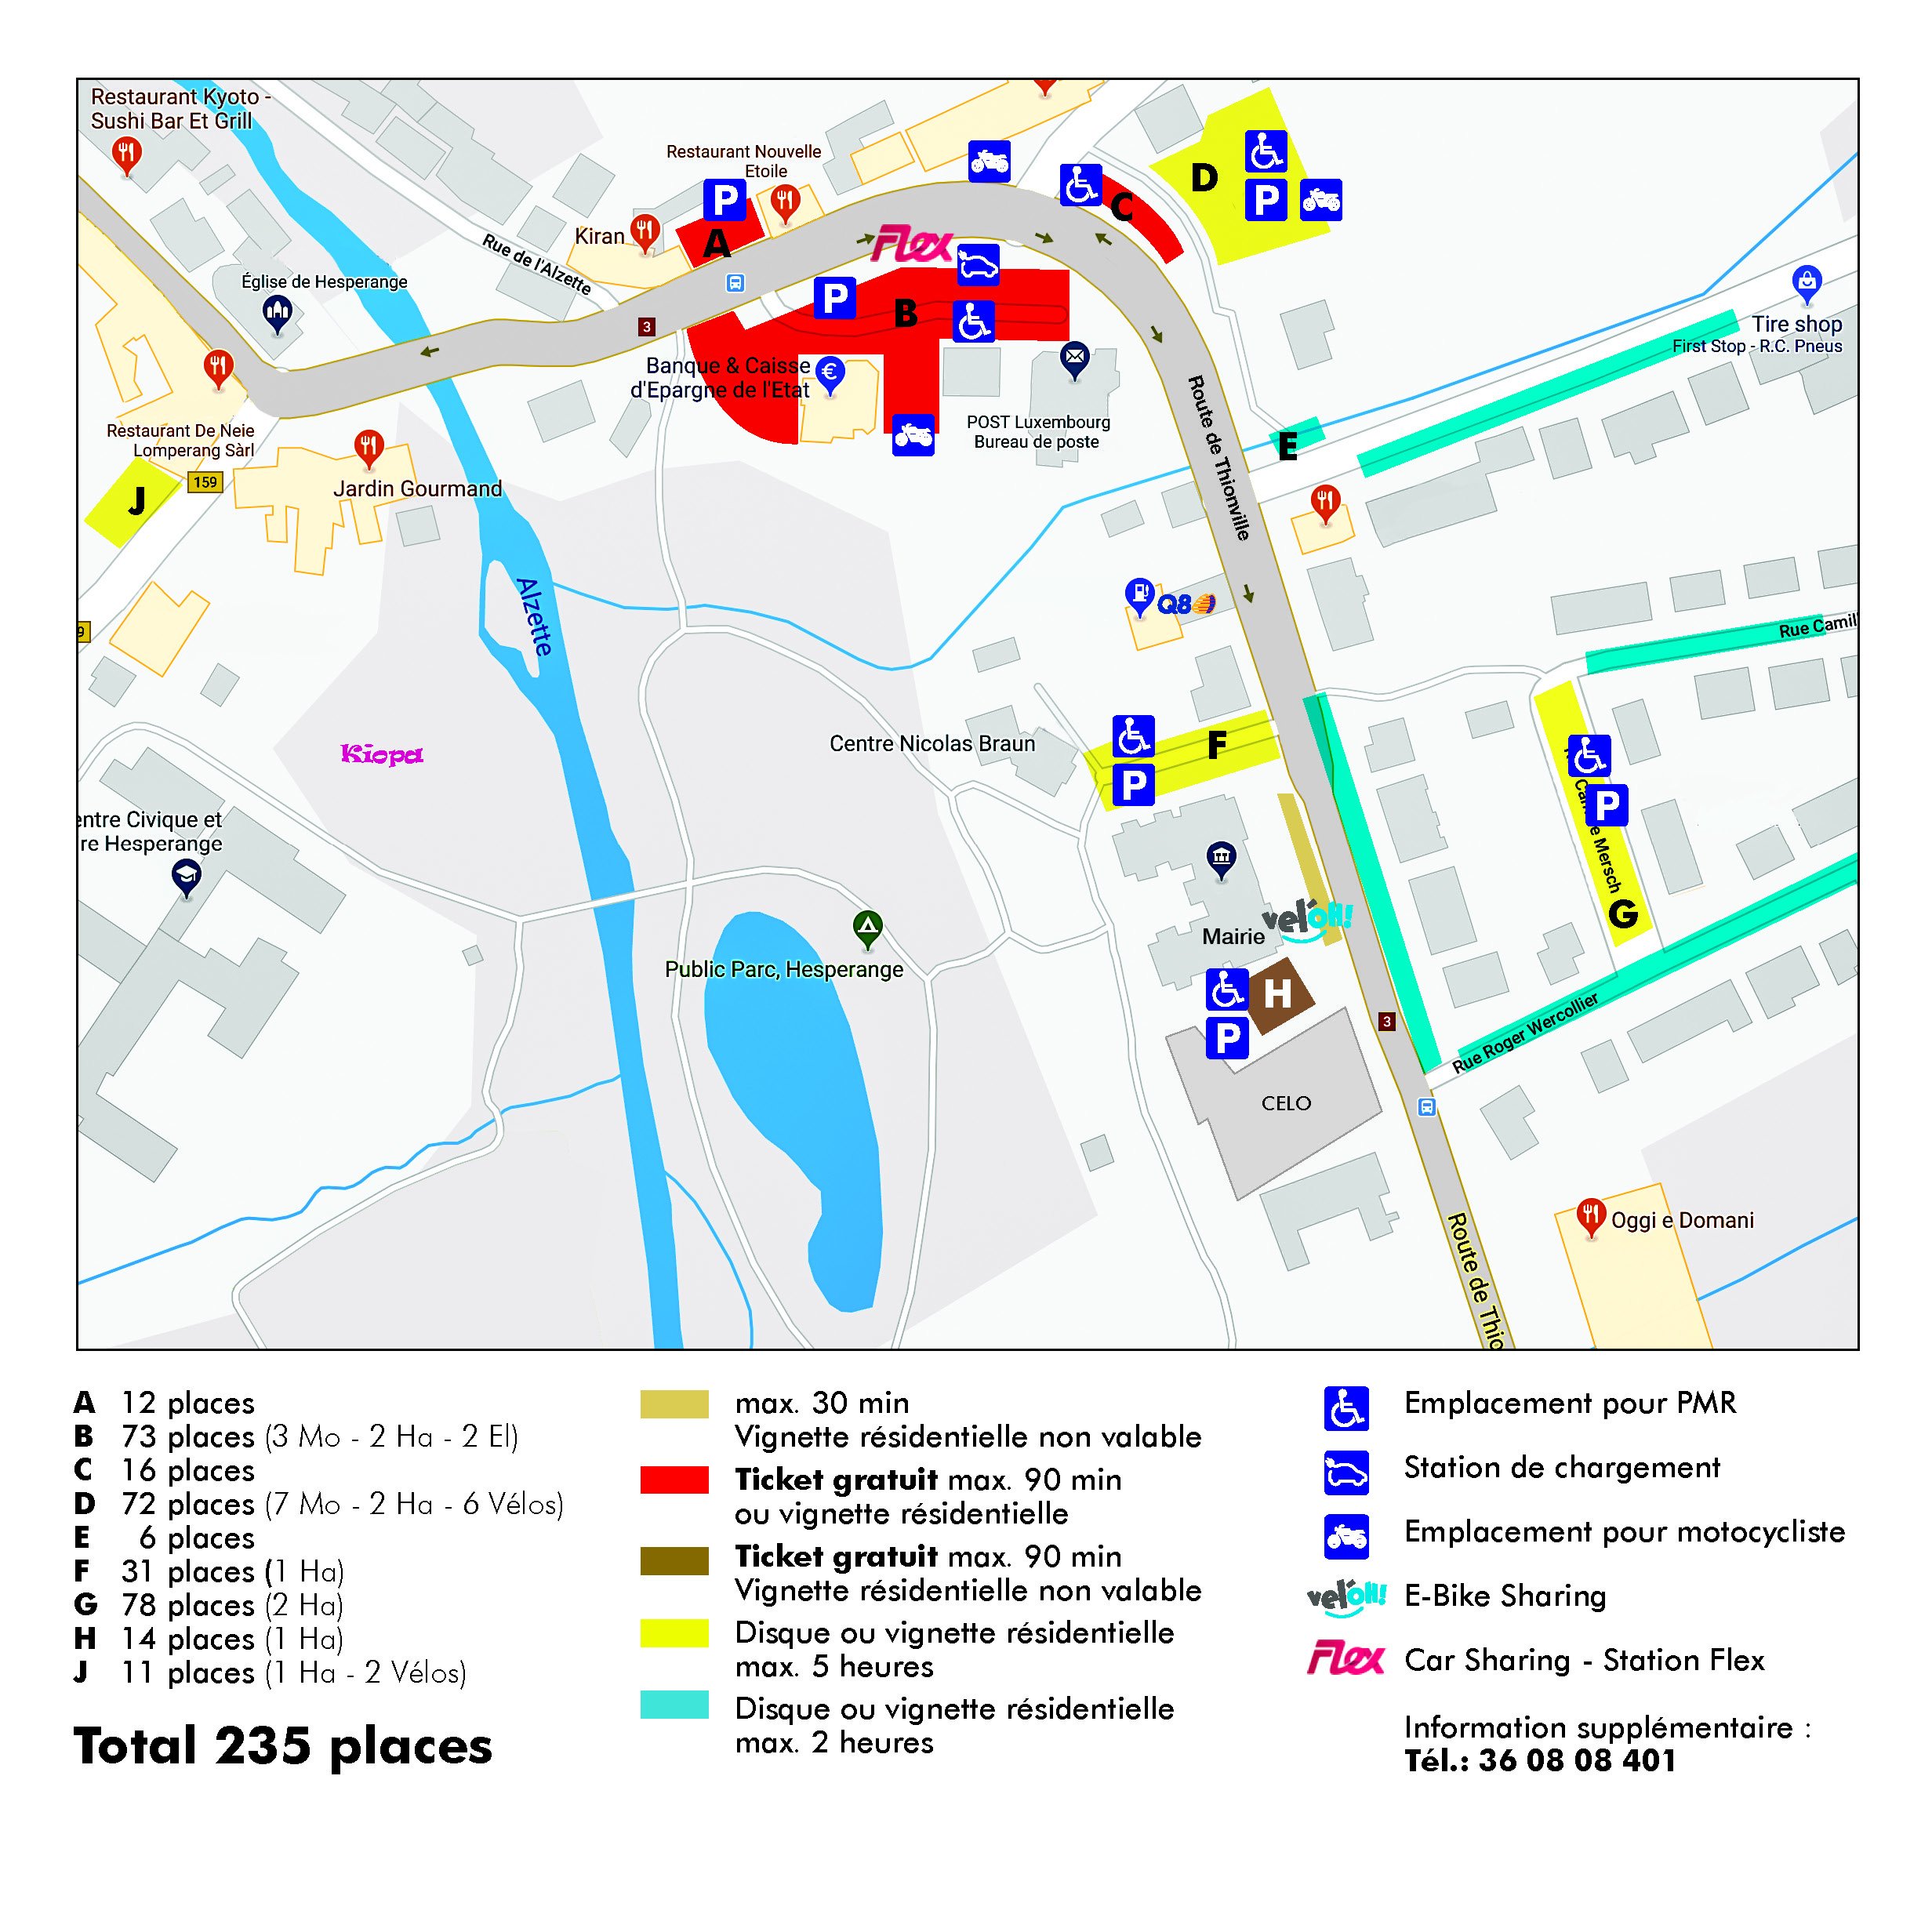 map showing different parking zones in hesperange